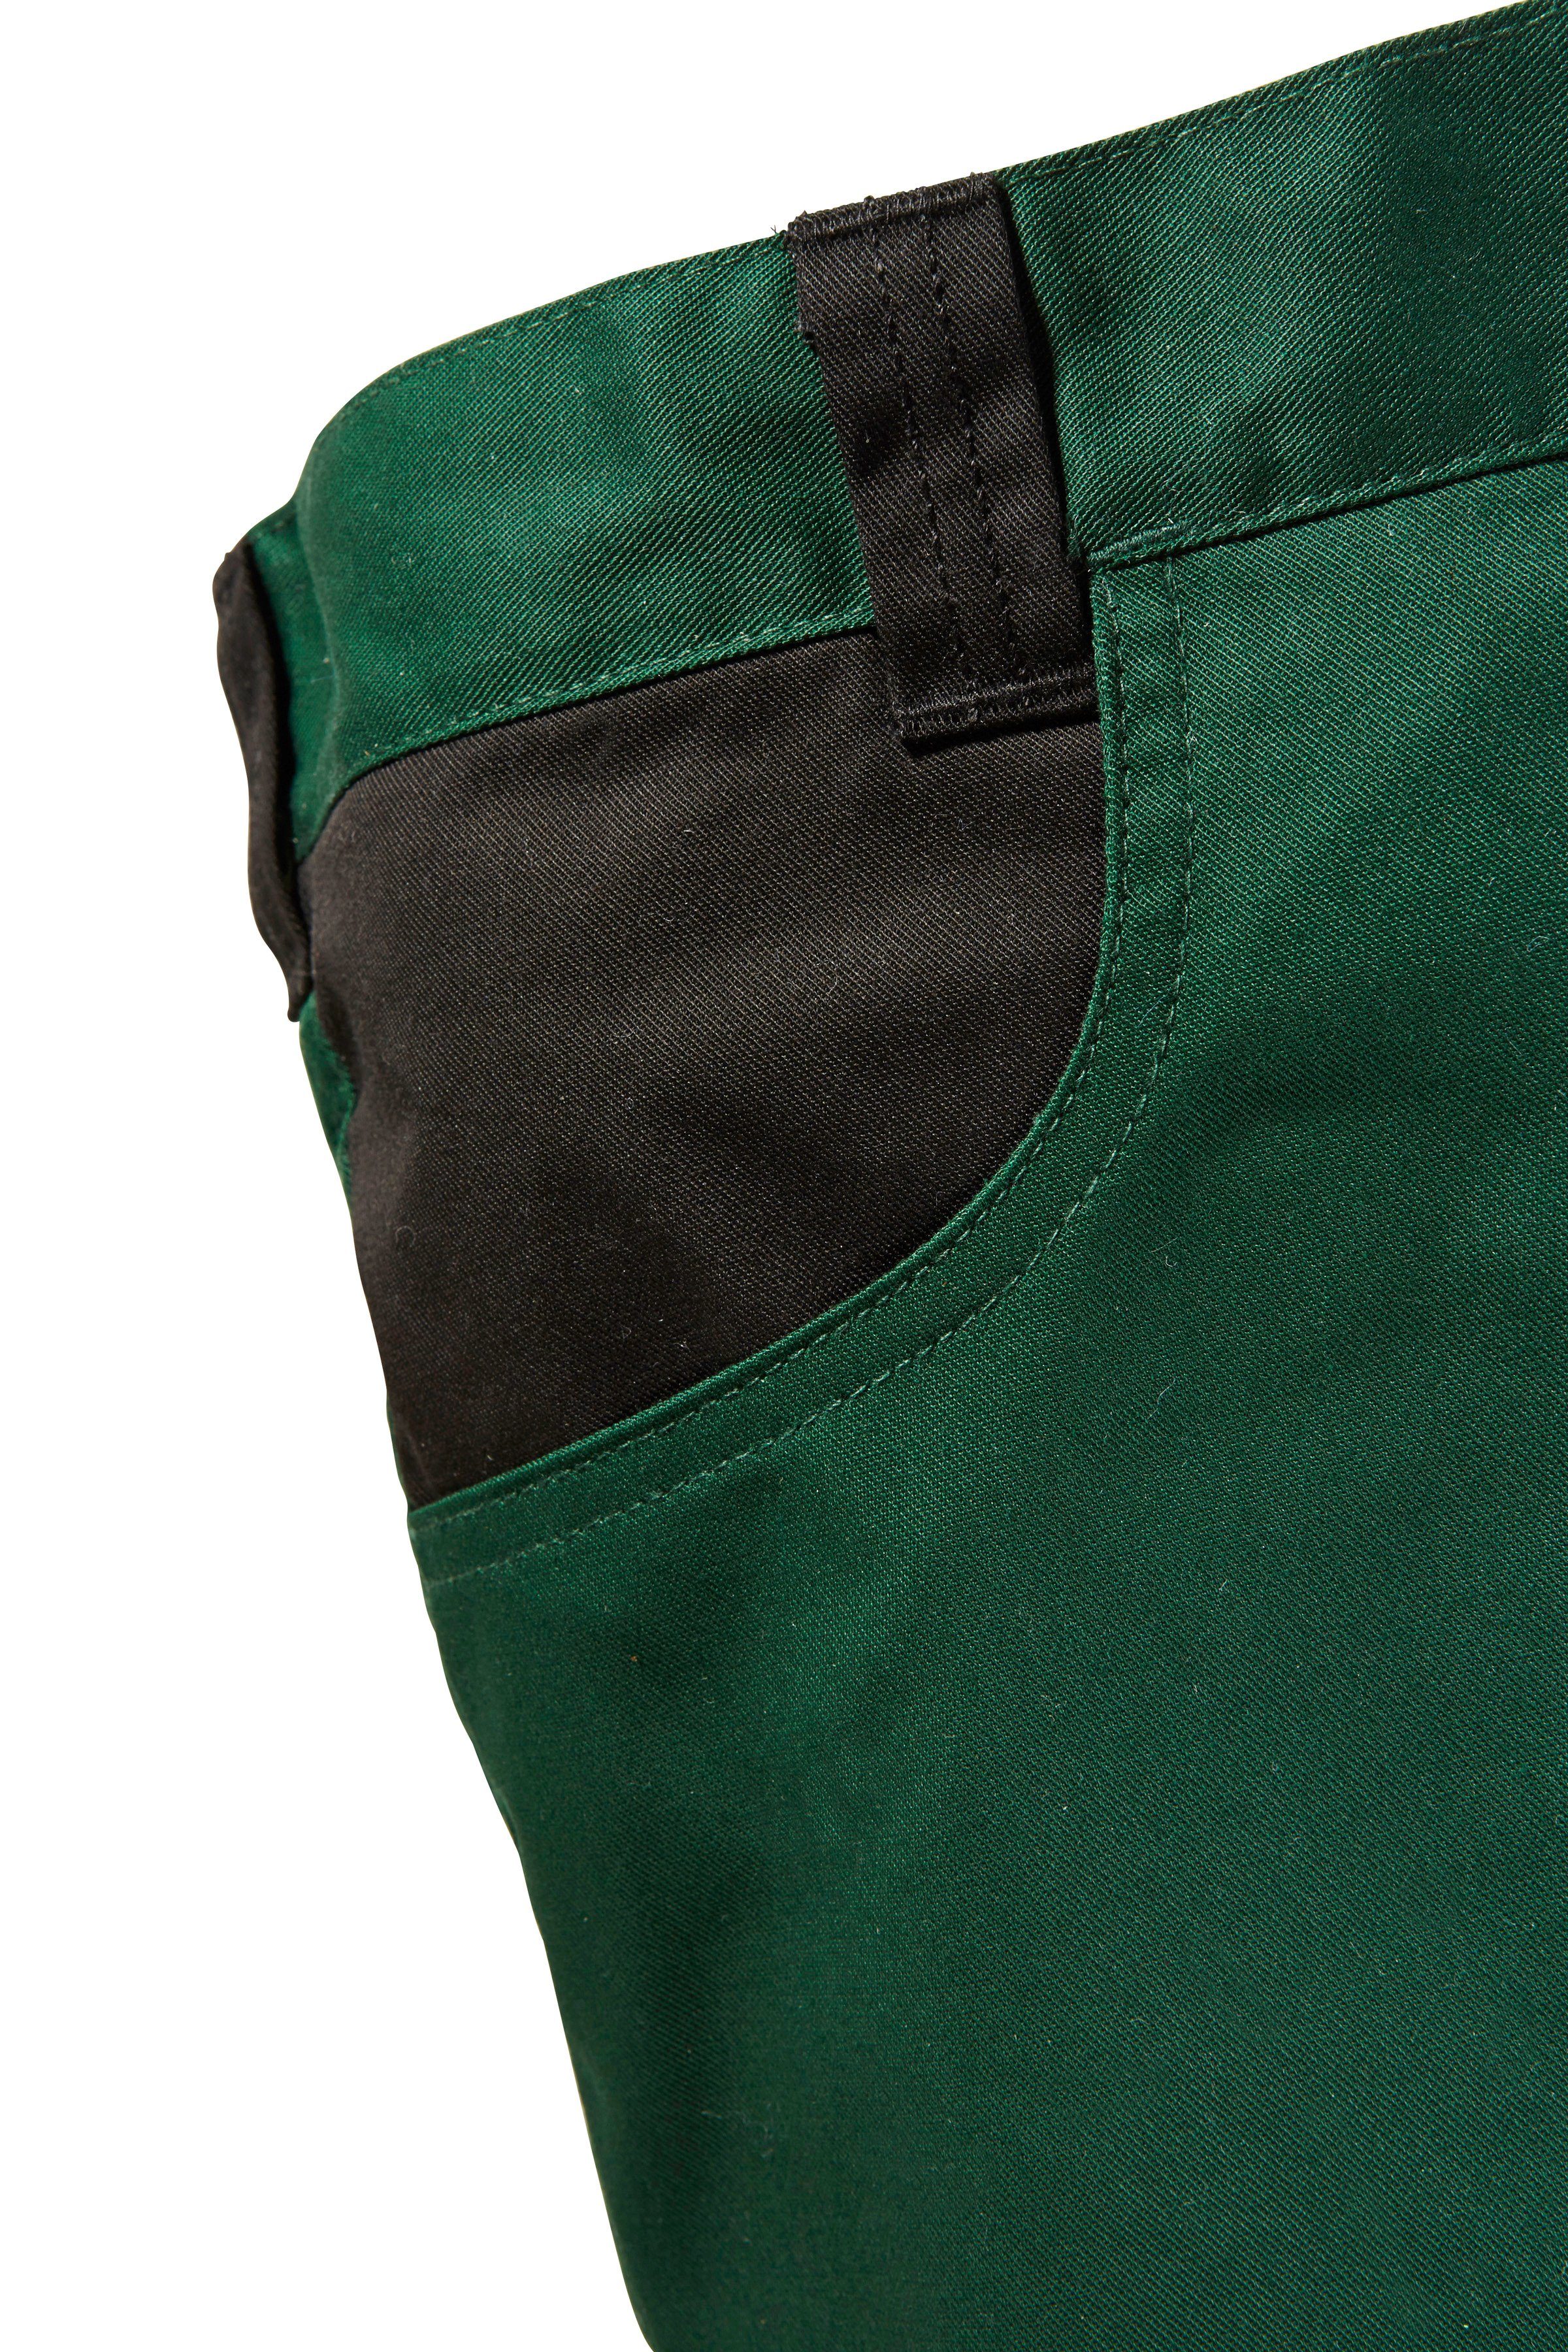 Arbeitshose grün-schwarz mit Pull Knieverstärkung safety& more